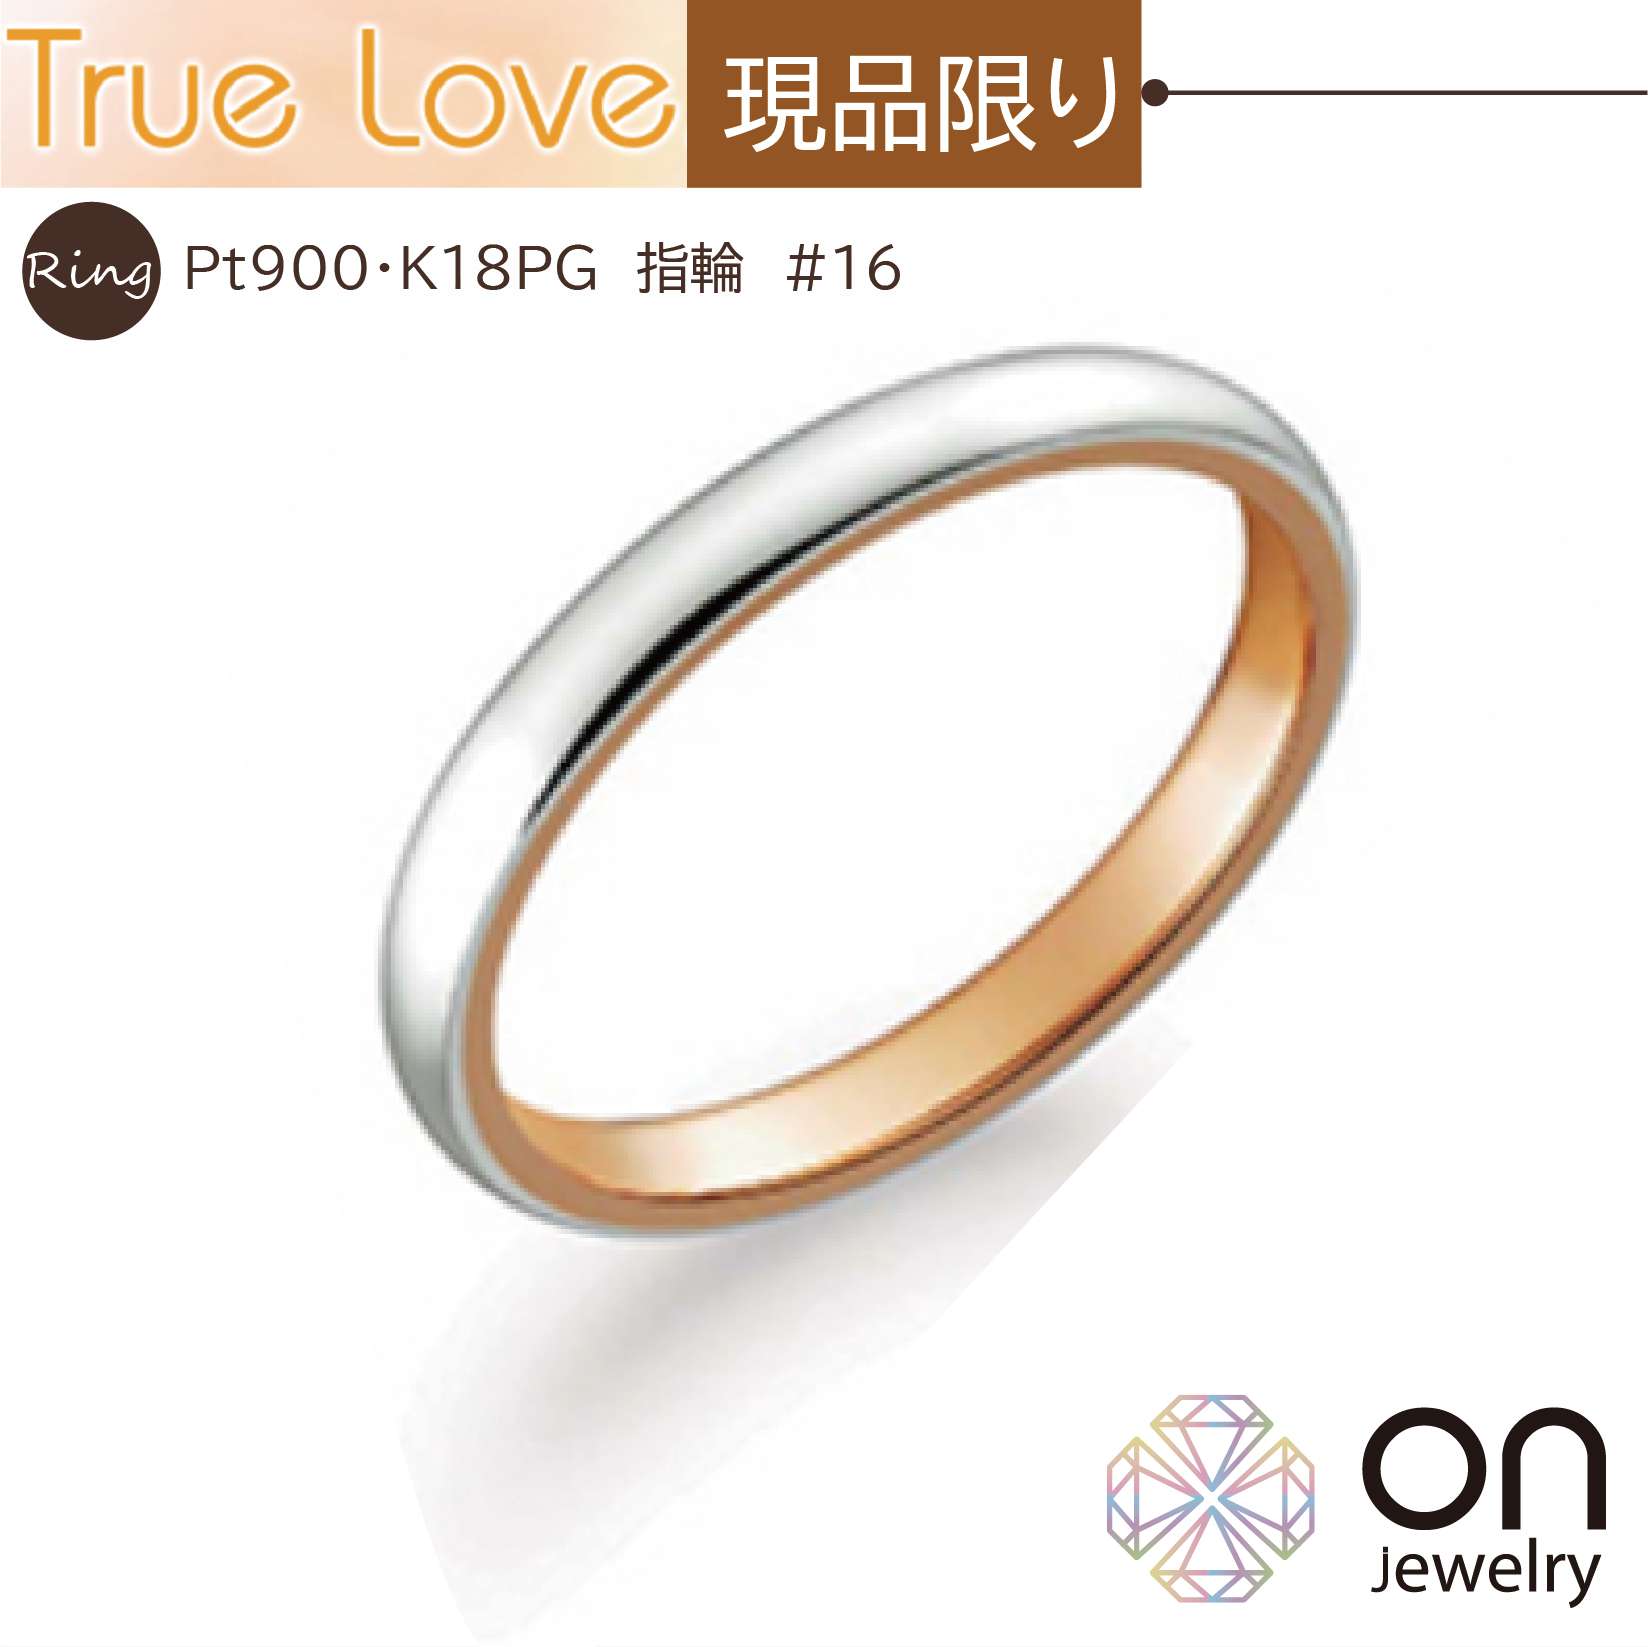 87472円 配送員設置送料無料 プラチナとピンクゴールドのコンビデザイン K18 Pt900マリッジリング 結婚指輪 True Love